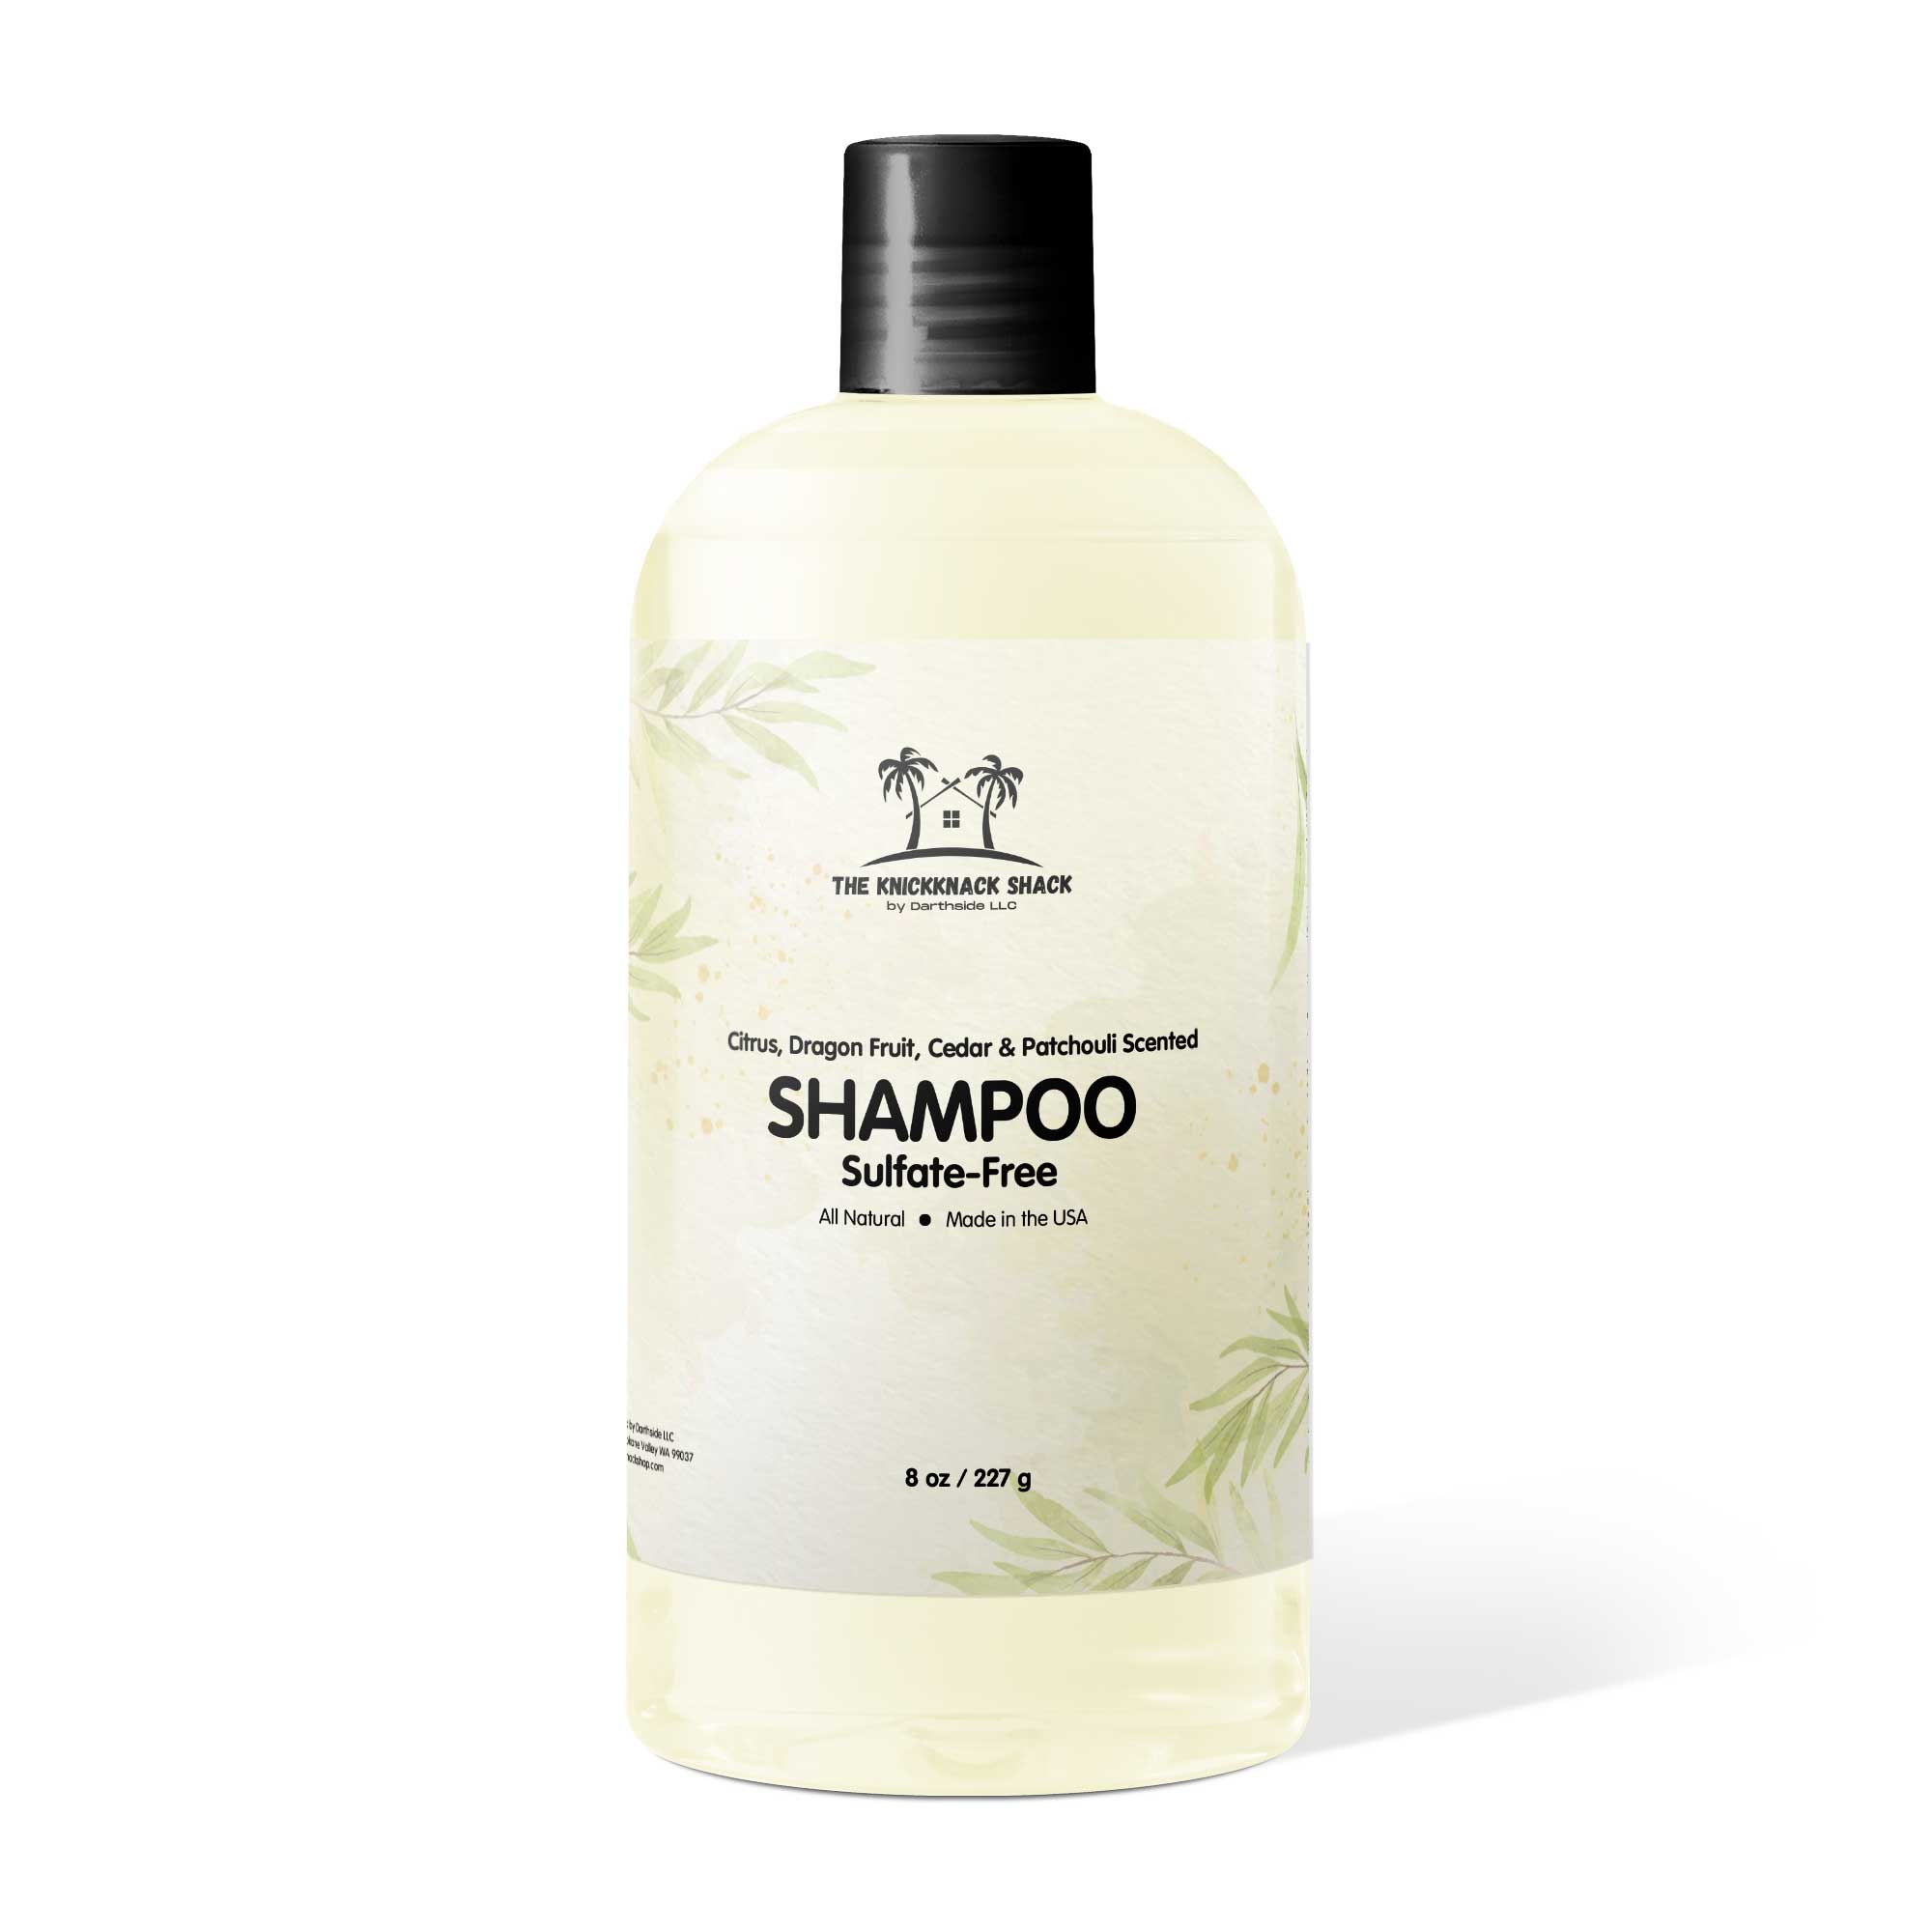 Citrus, Dragon Fruit, Cedar & Patchouli Scented Sulfate-Free Shampoo